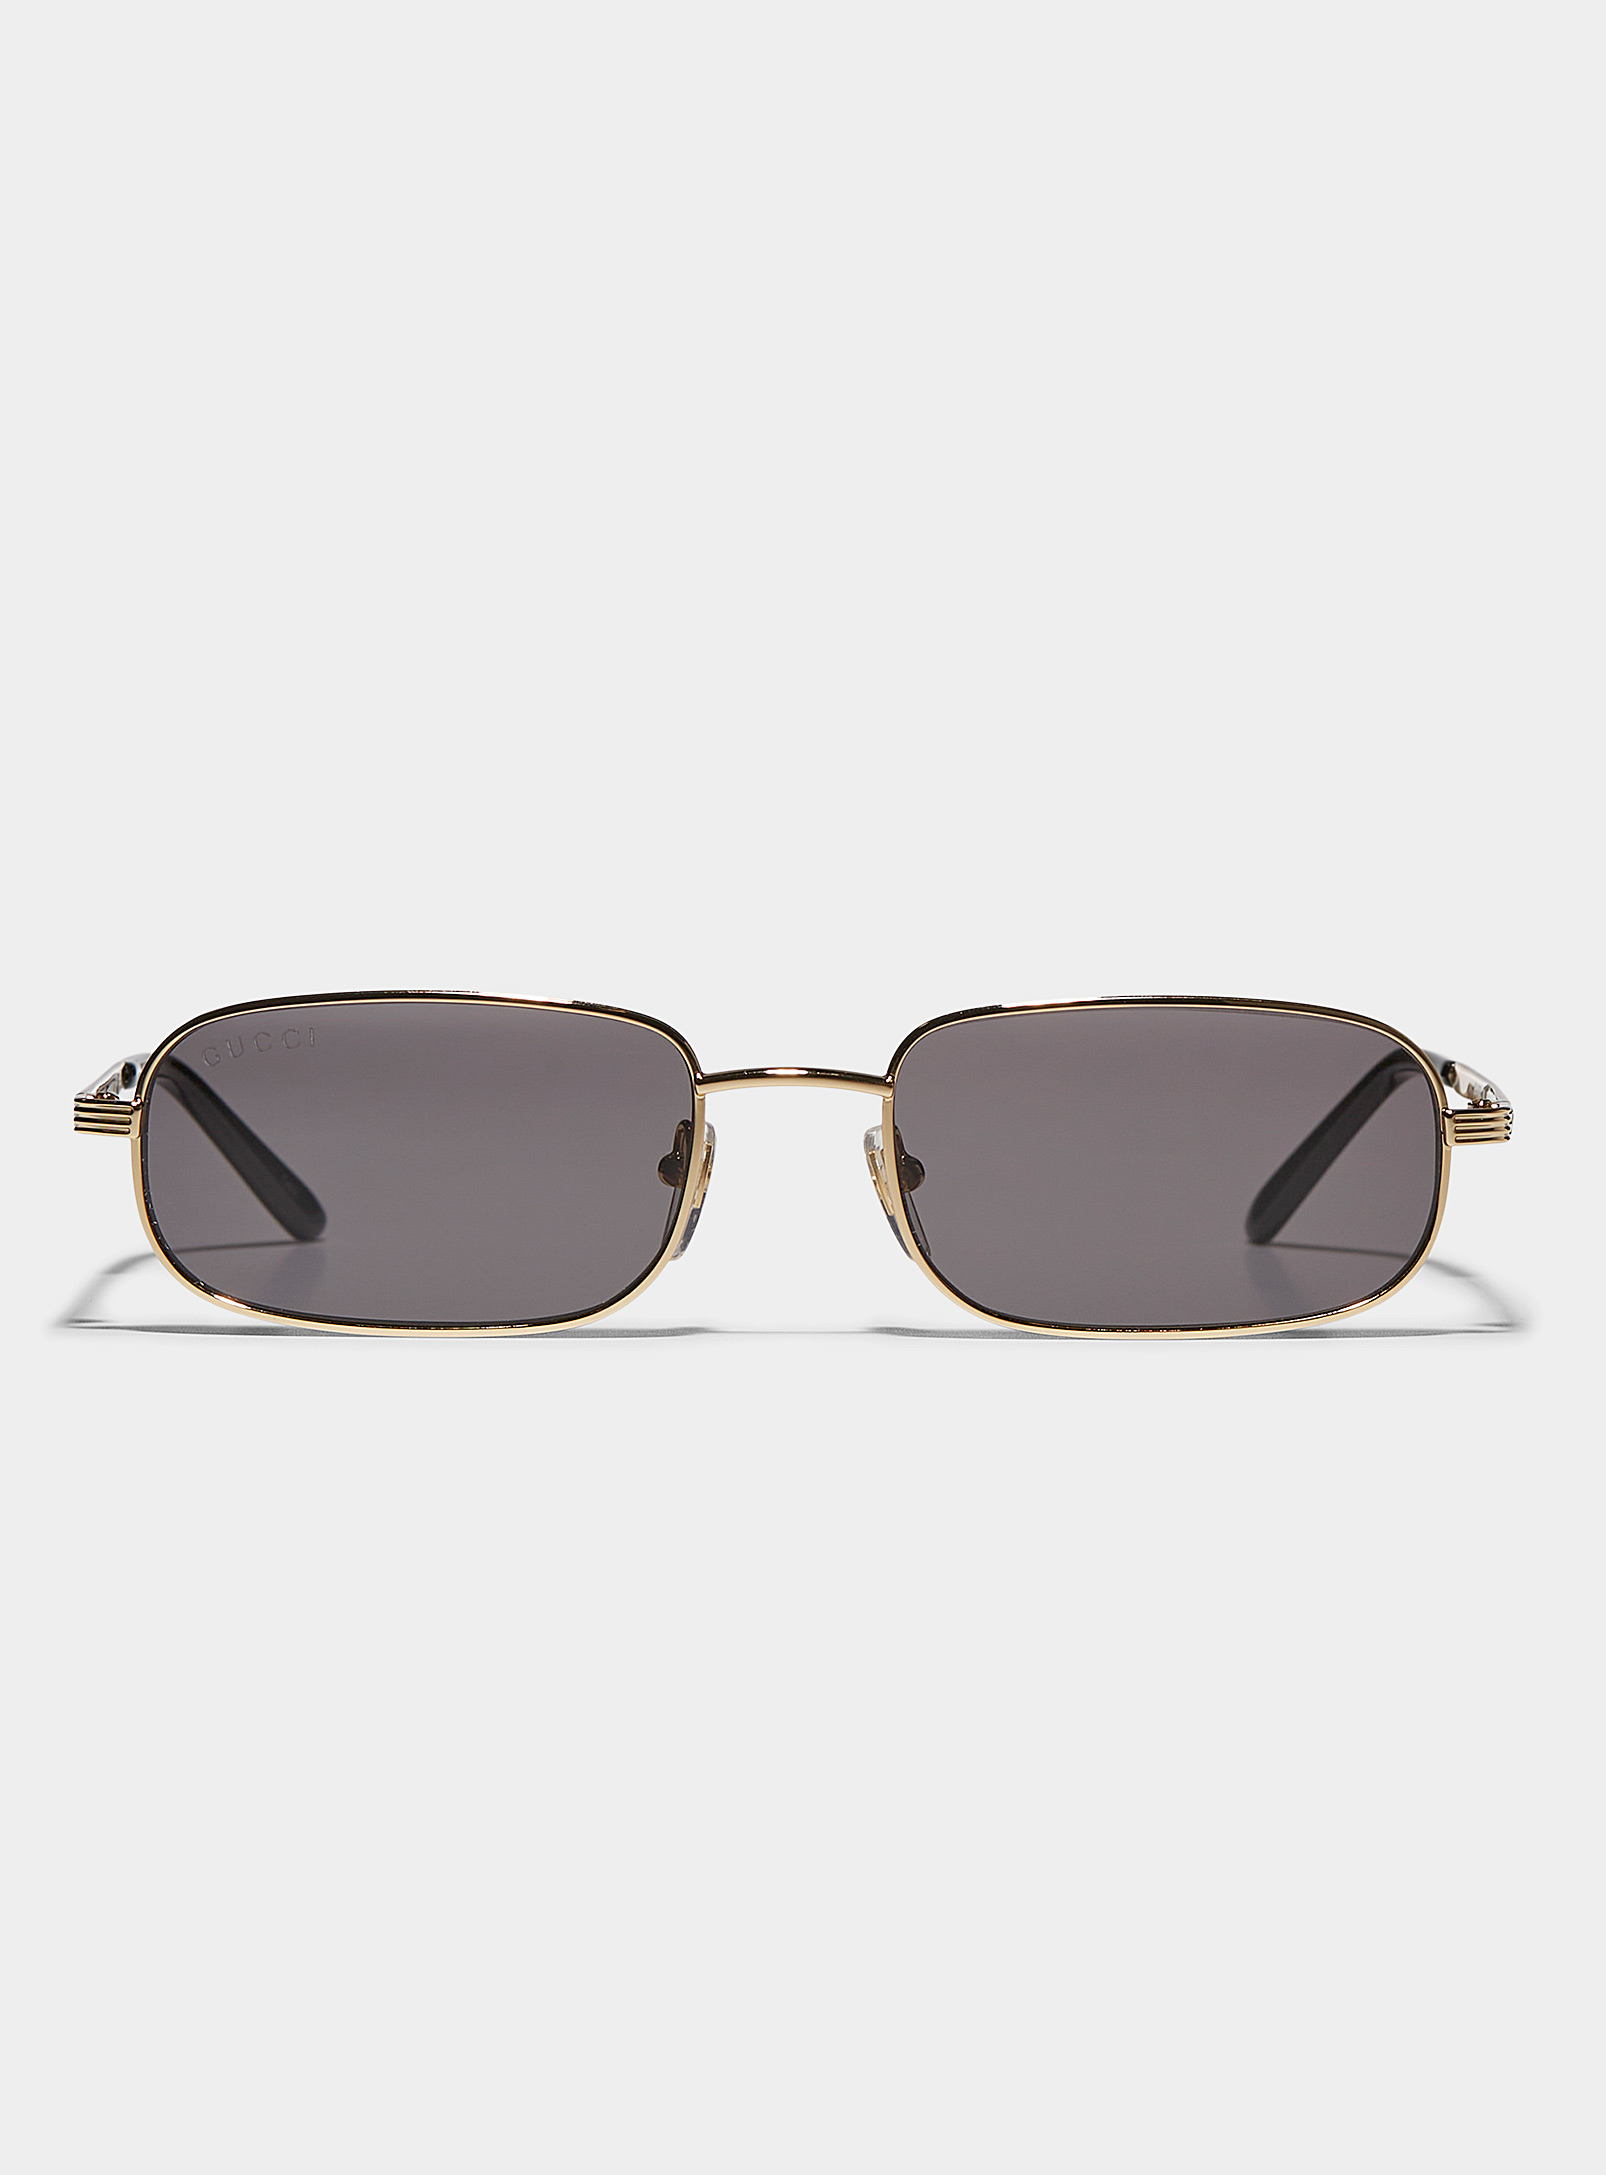 Gucci - Les lunettes de soleil dorées profilées